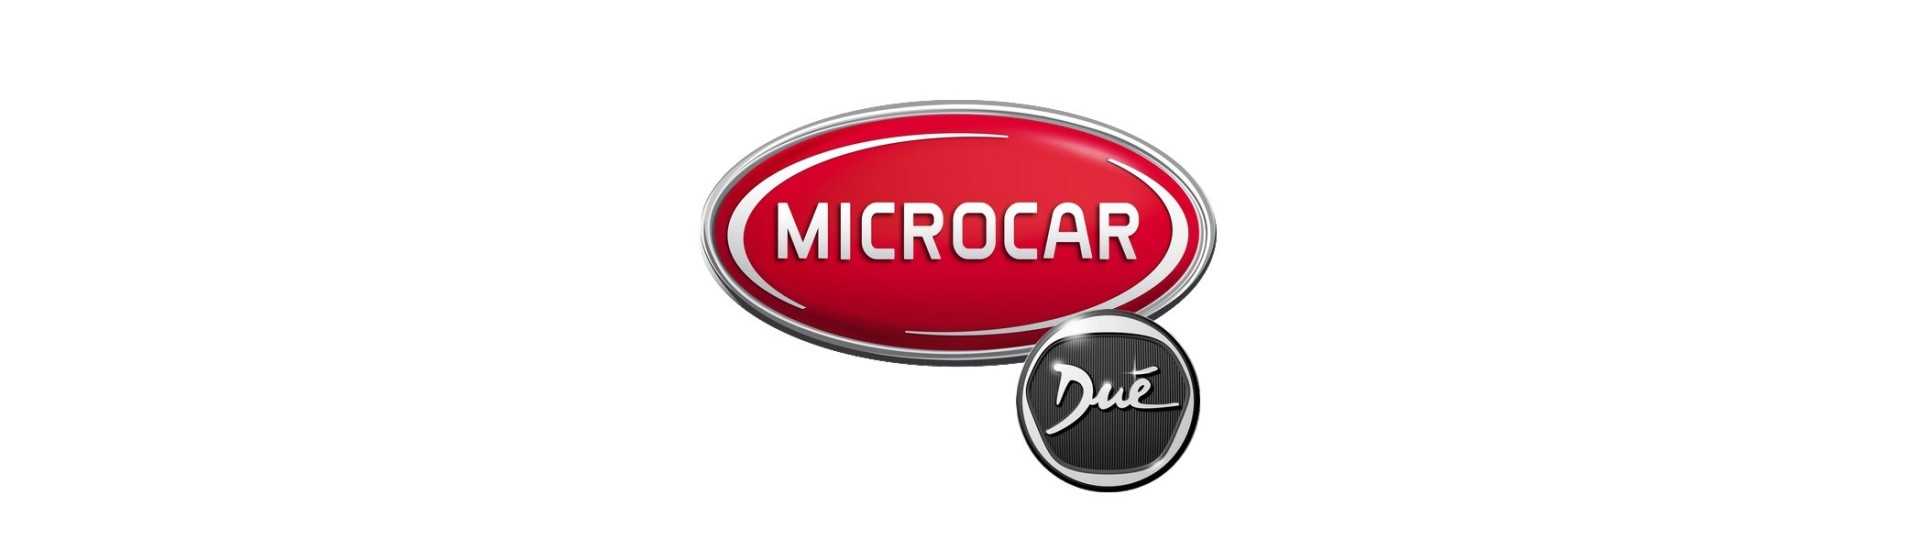 Catadioptre al miglior prezzo per auto senza permesso Microcar Dué